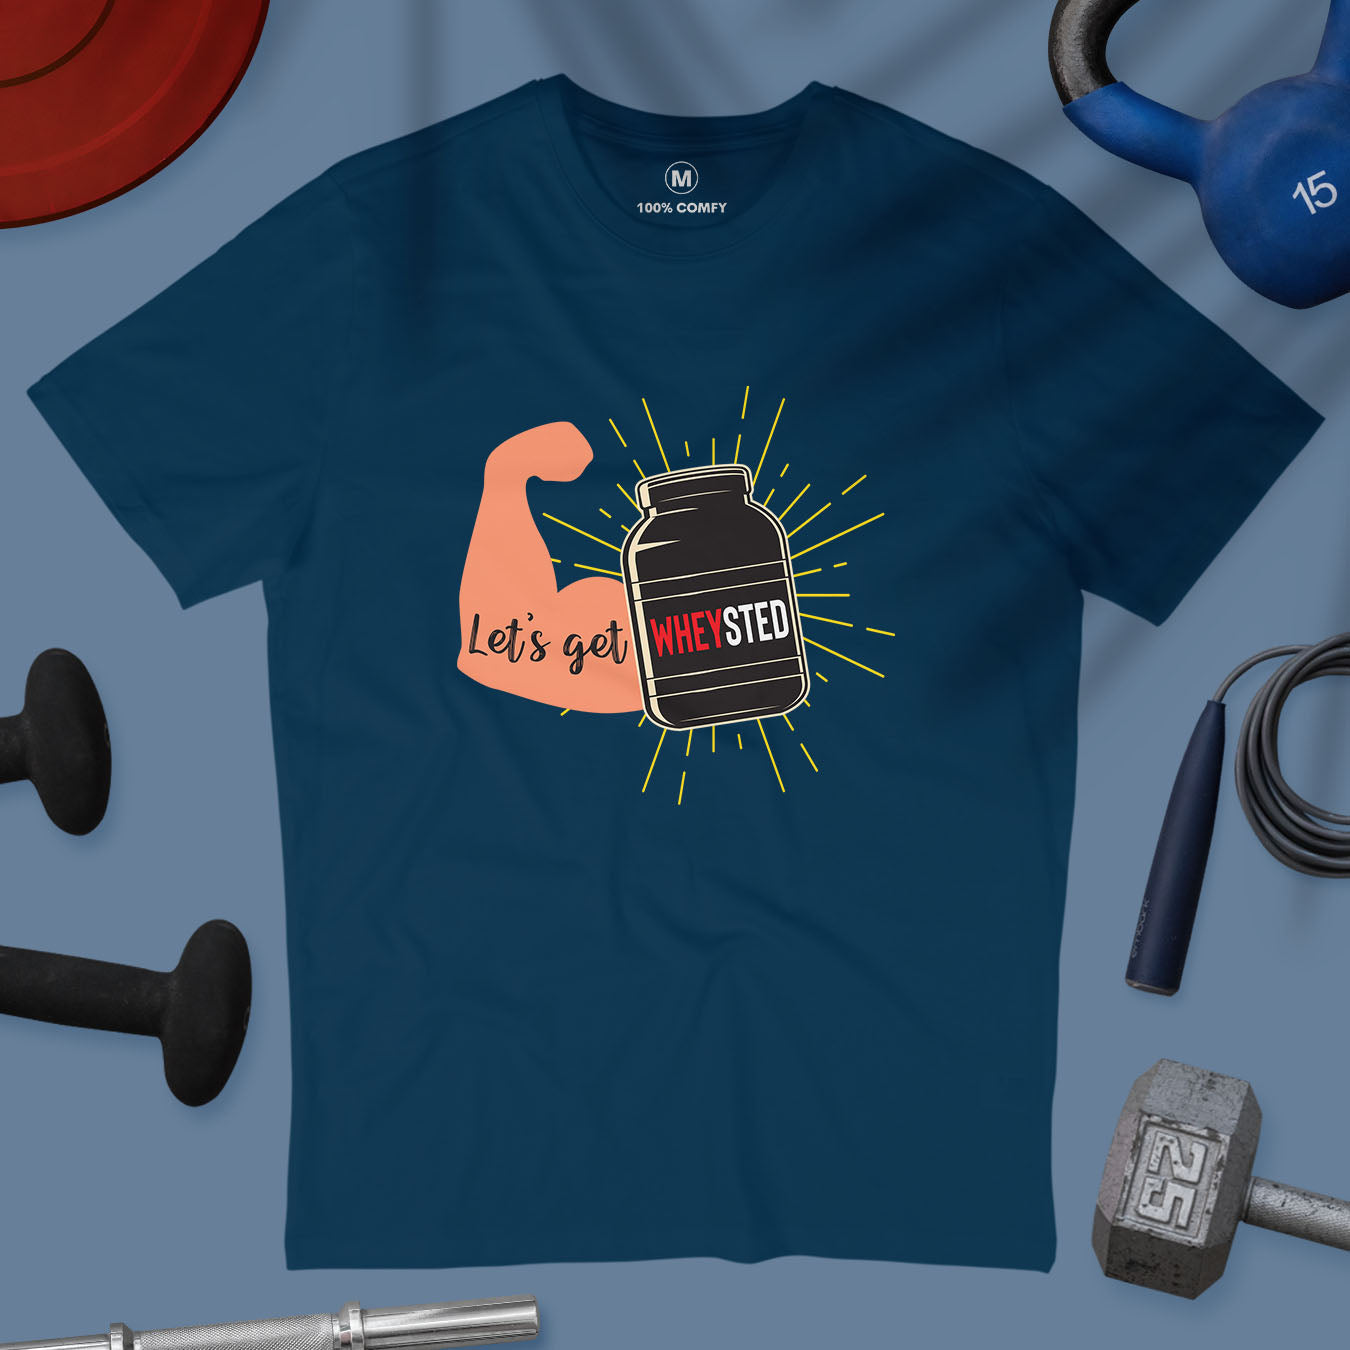 Let&#39;s Get Wheysted - Men T-shirt